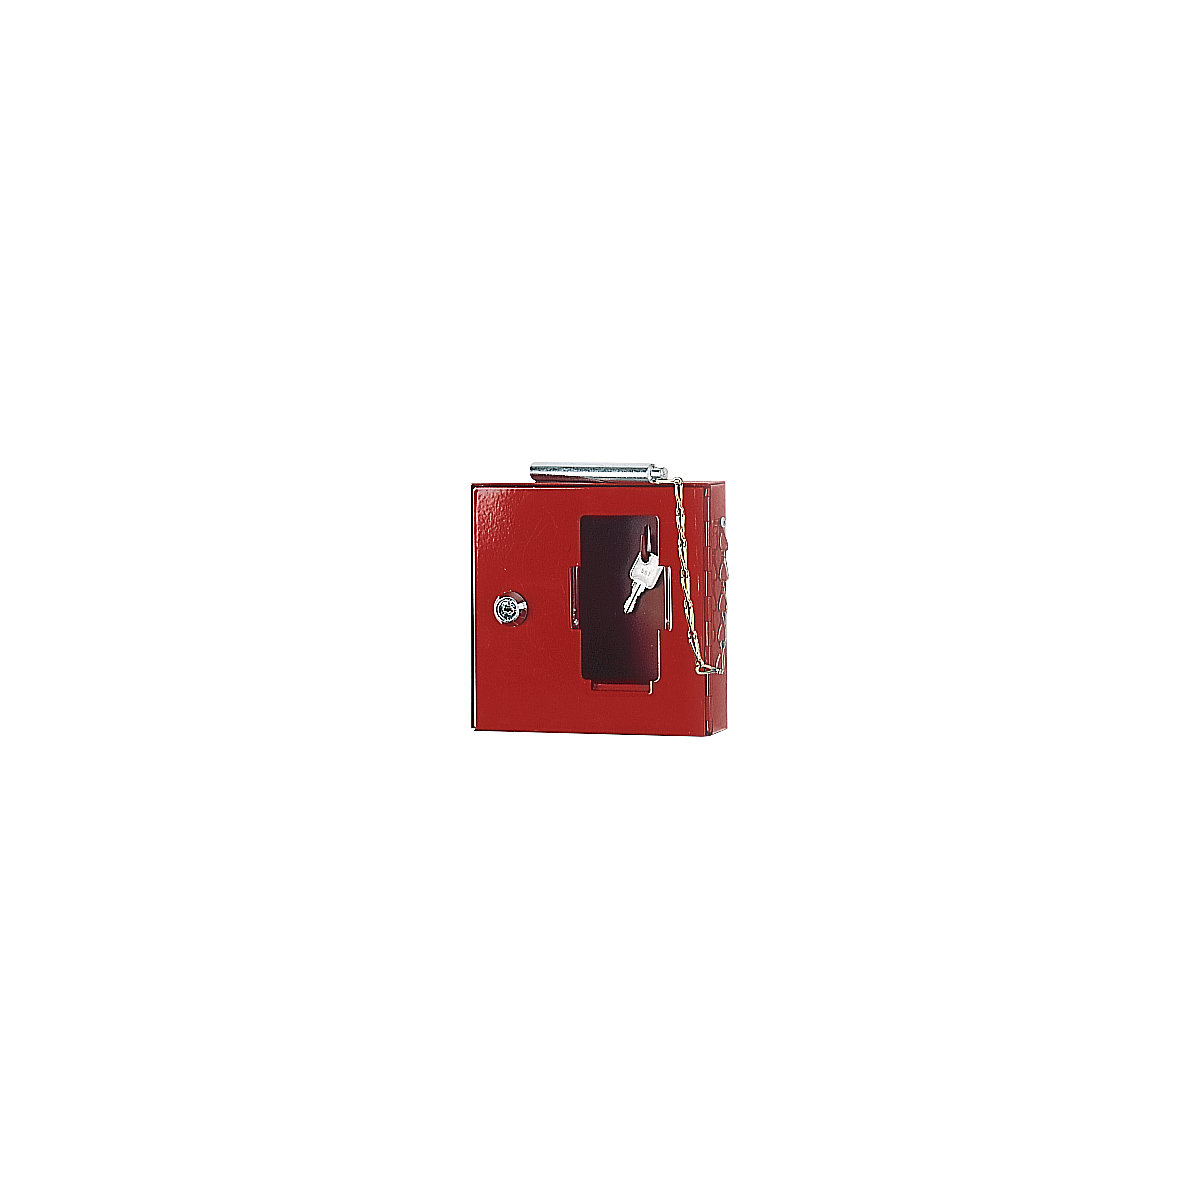 Notschlüsselkasten mit Glasscheibe, mit Klöppel zum Einschlagen, HxBxT 200 x 200 x 50 mm, VE 3 Stk